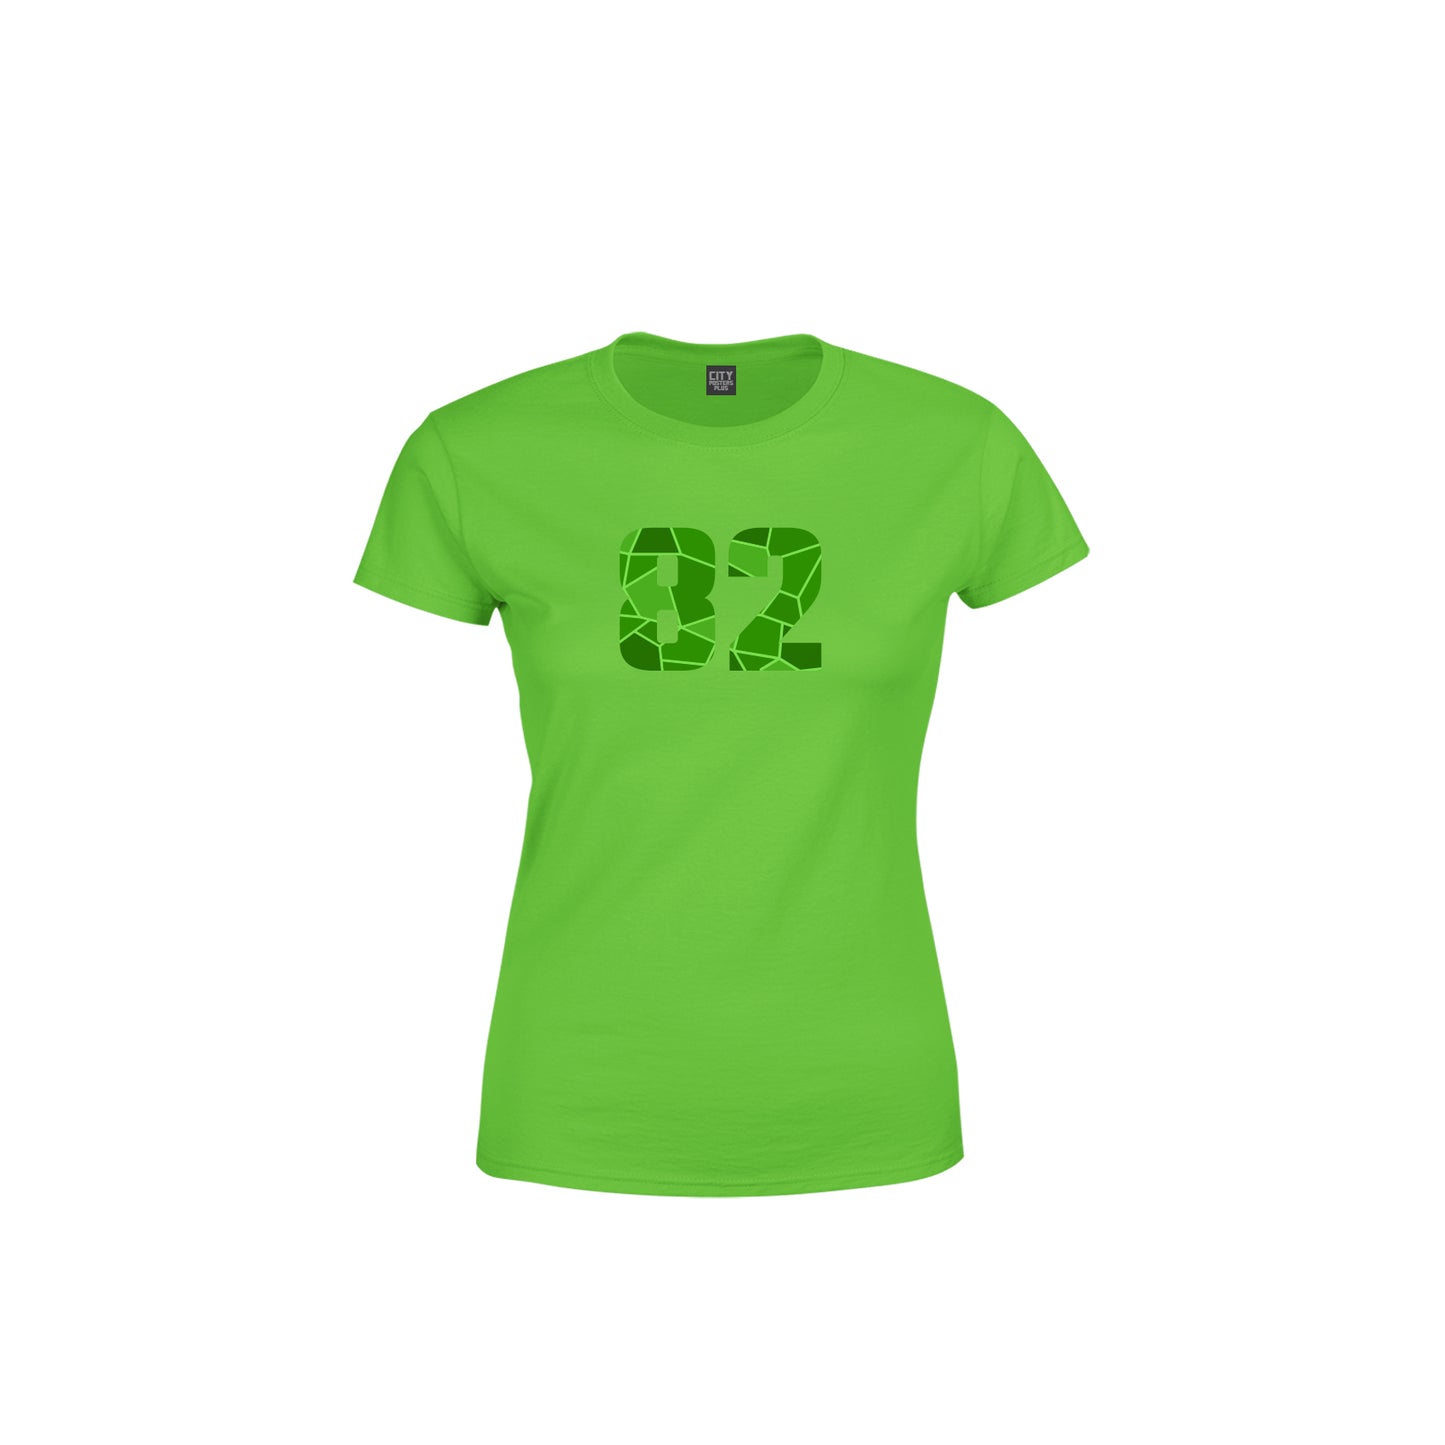 82 Number Women's T-Shirt (Liril Green)